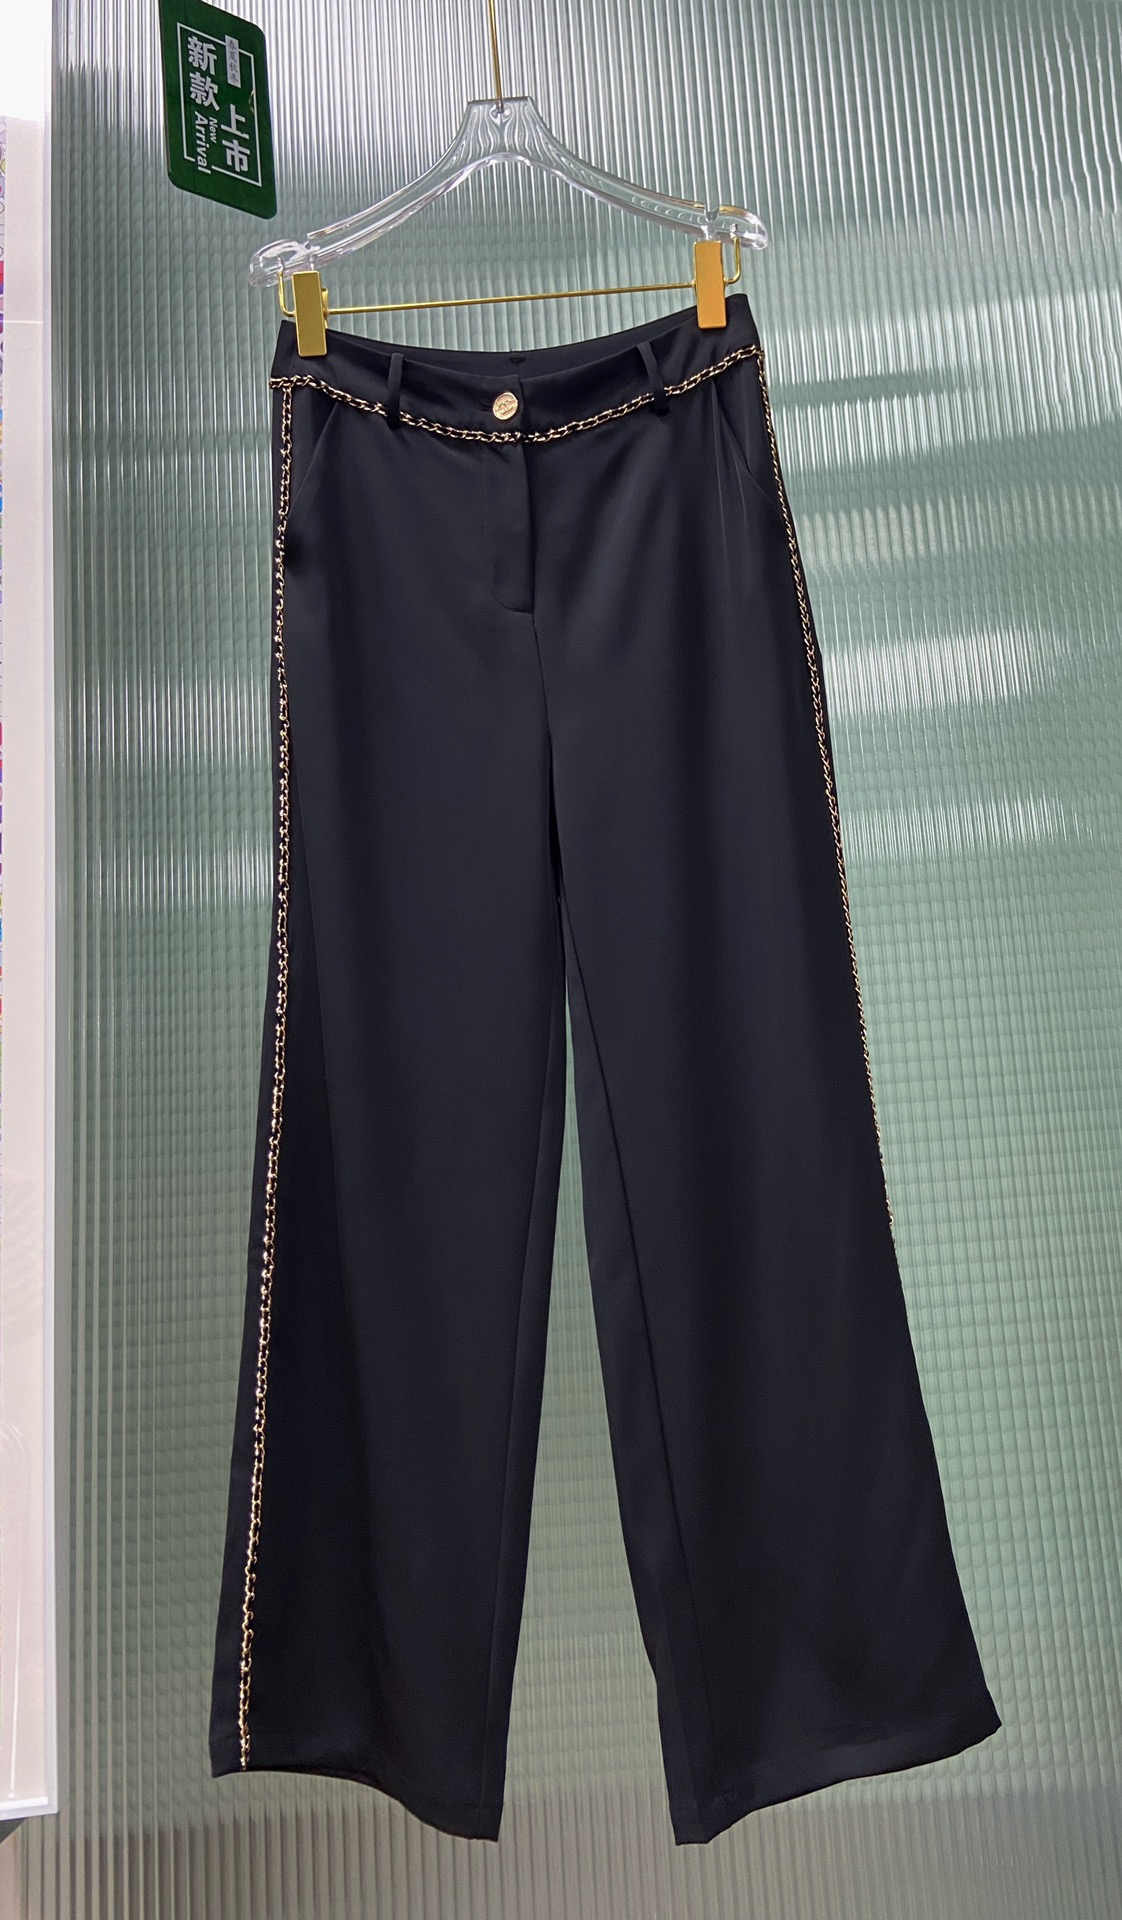 小香CHAN*L24新款拼接链条休闲裤，时尚单品上身满满的潮流风视觉，面料舒适有型，单色SML@zewqs5